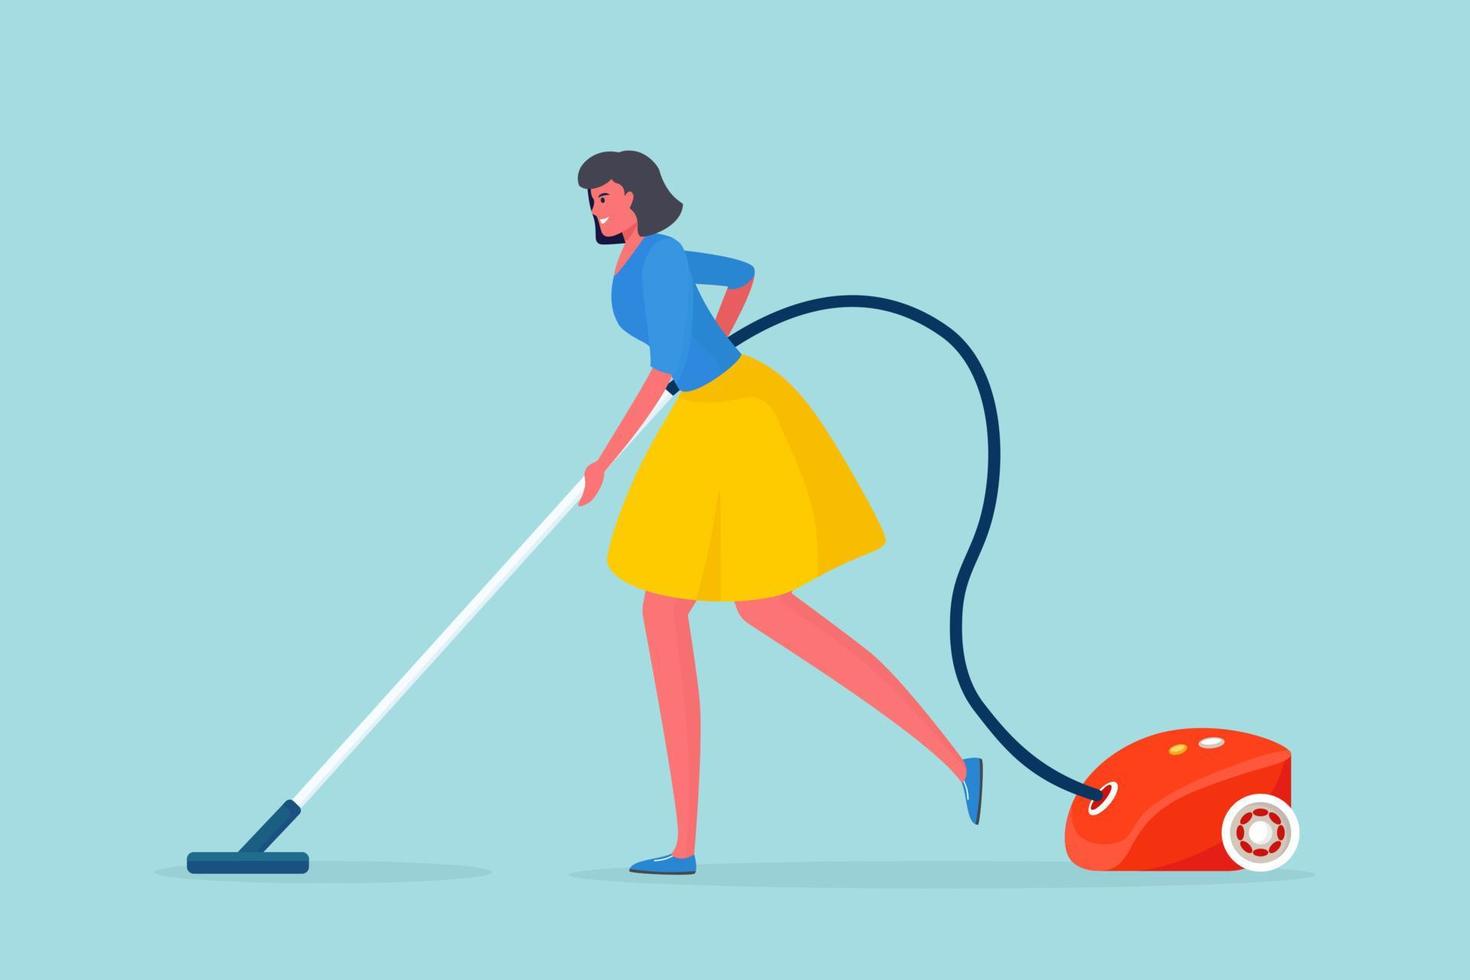 mujer limpiando piso con aspiradora. ama de casa o criada haciendo tareas domésticas vector